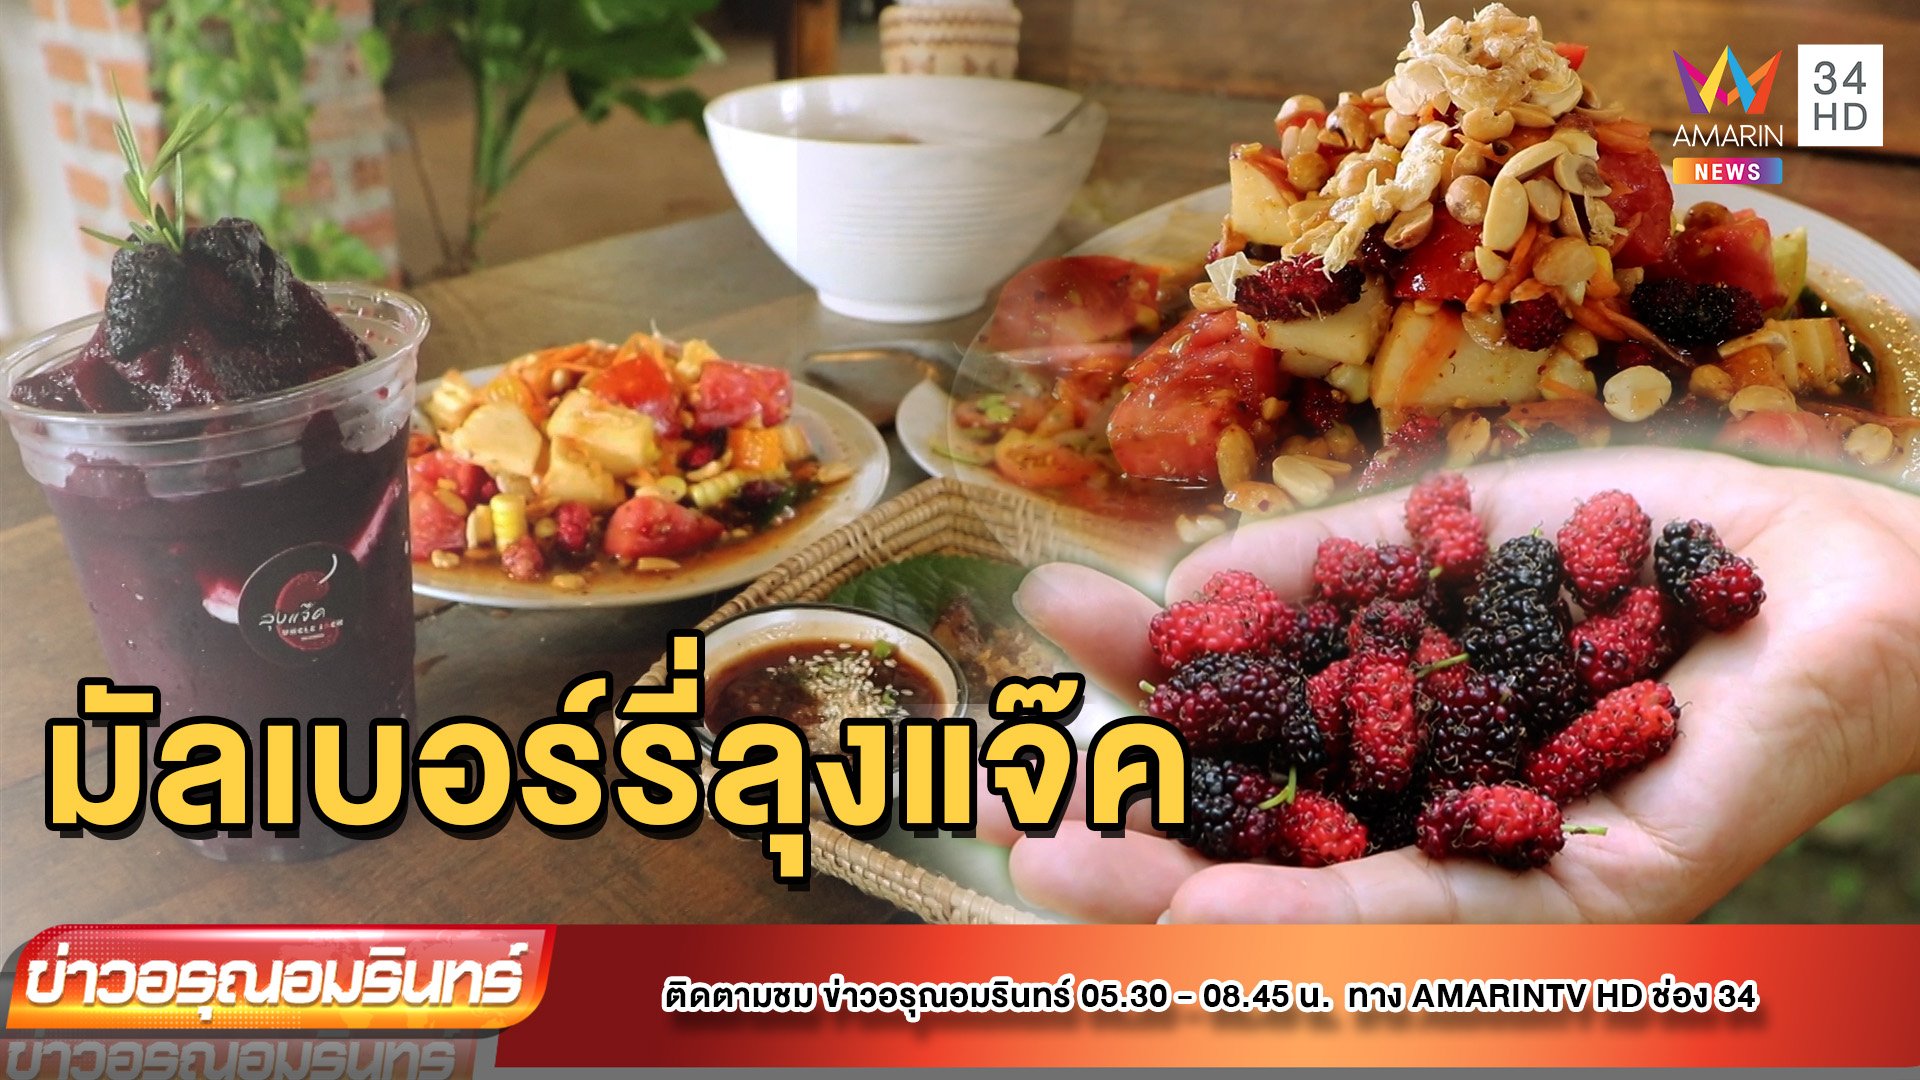 เปิดร้านอาหารต่อยอดสวนมัลเบอร์รี่ ขายอาหารจากผลไม้ในสวน | ข่าวอรุณอมรินทร์ | 26 ต.ค. 65 | AMARIN TVHD34